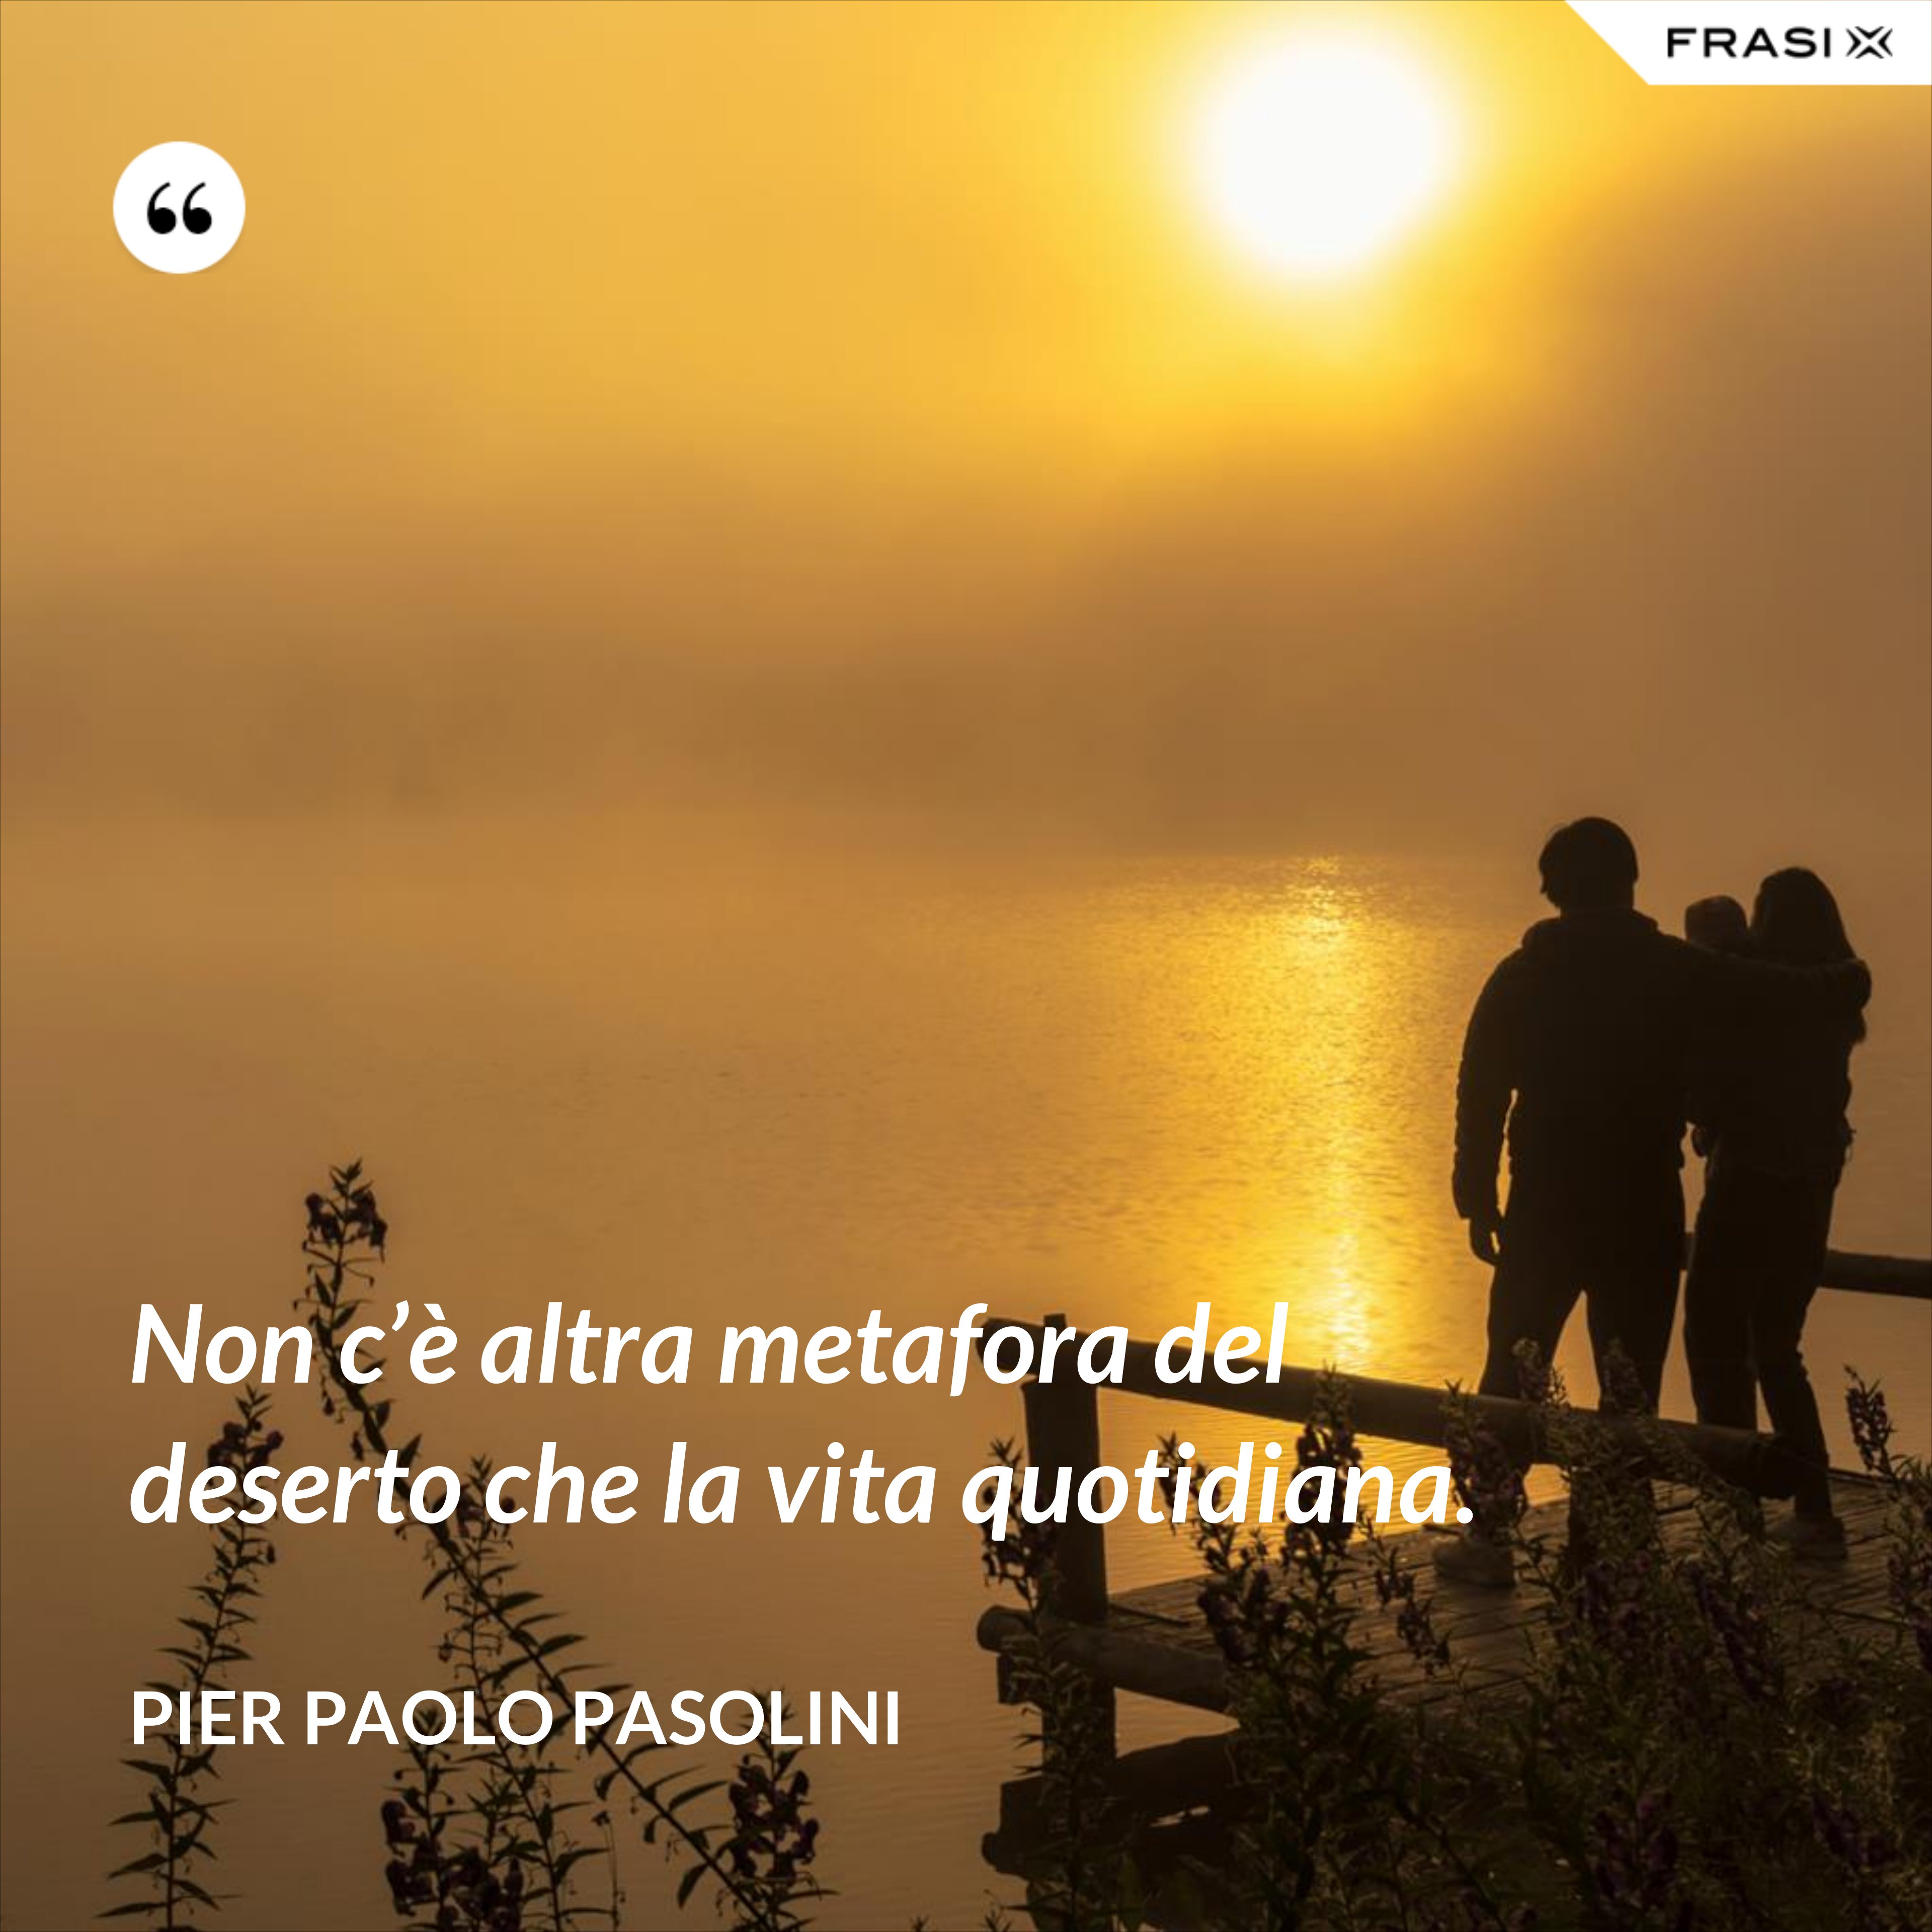 Non c’è altra metafora del deserto che la vita quotidiana. - Pier Paolo Pasolini